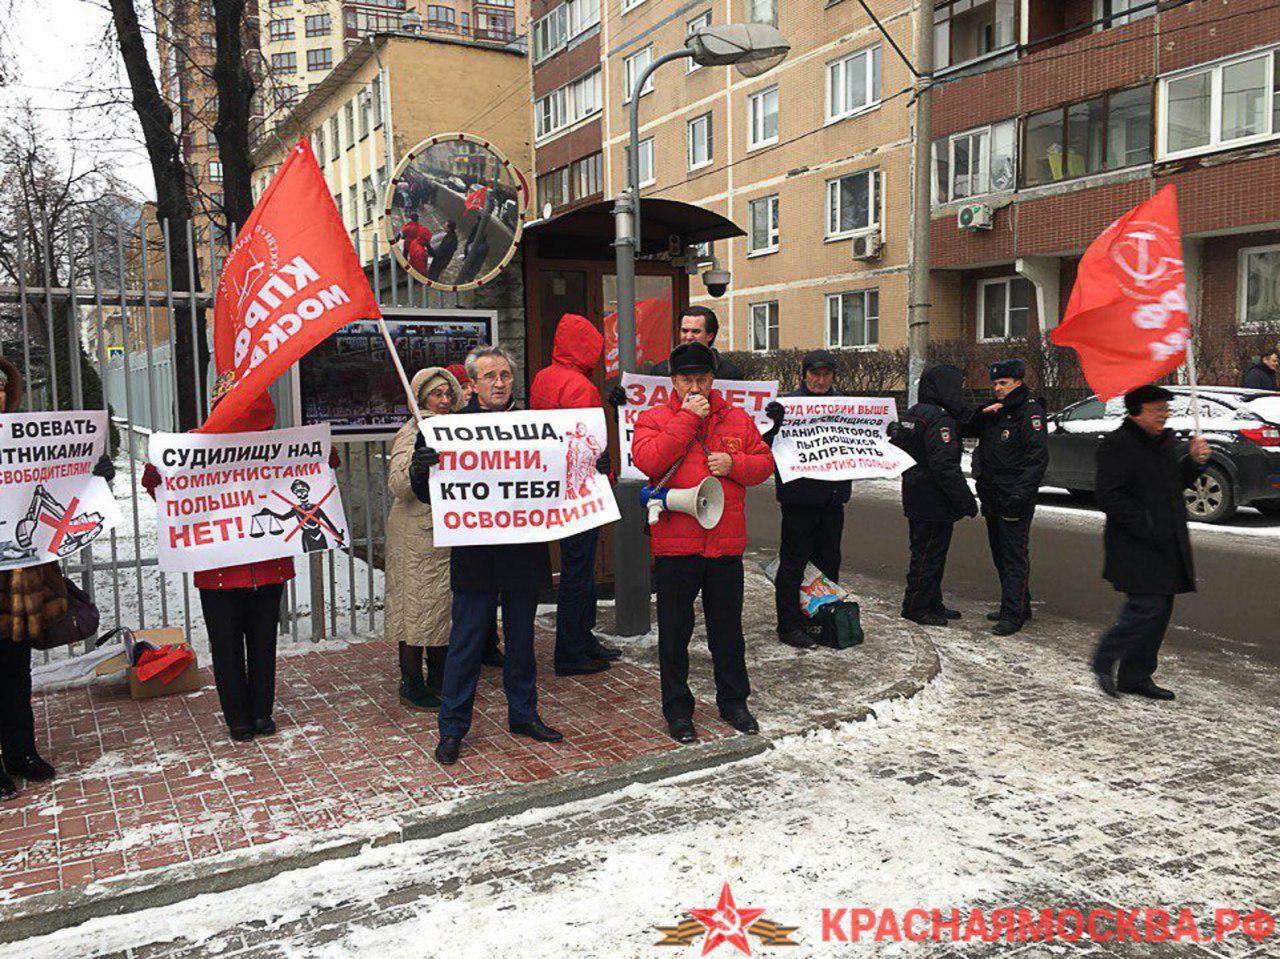 У посольства Польши в Москве прошел митинг против сноса советских памятников